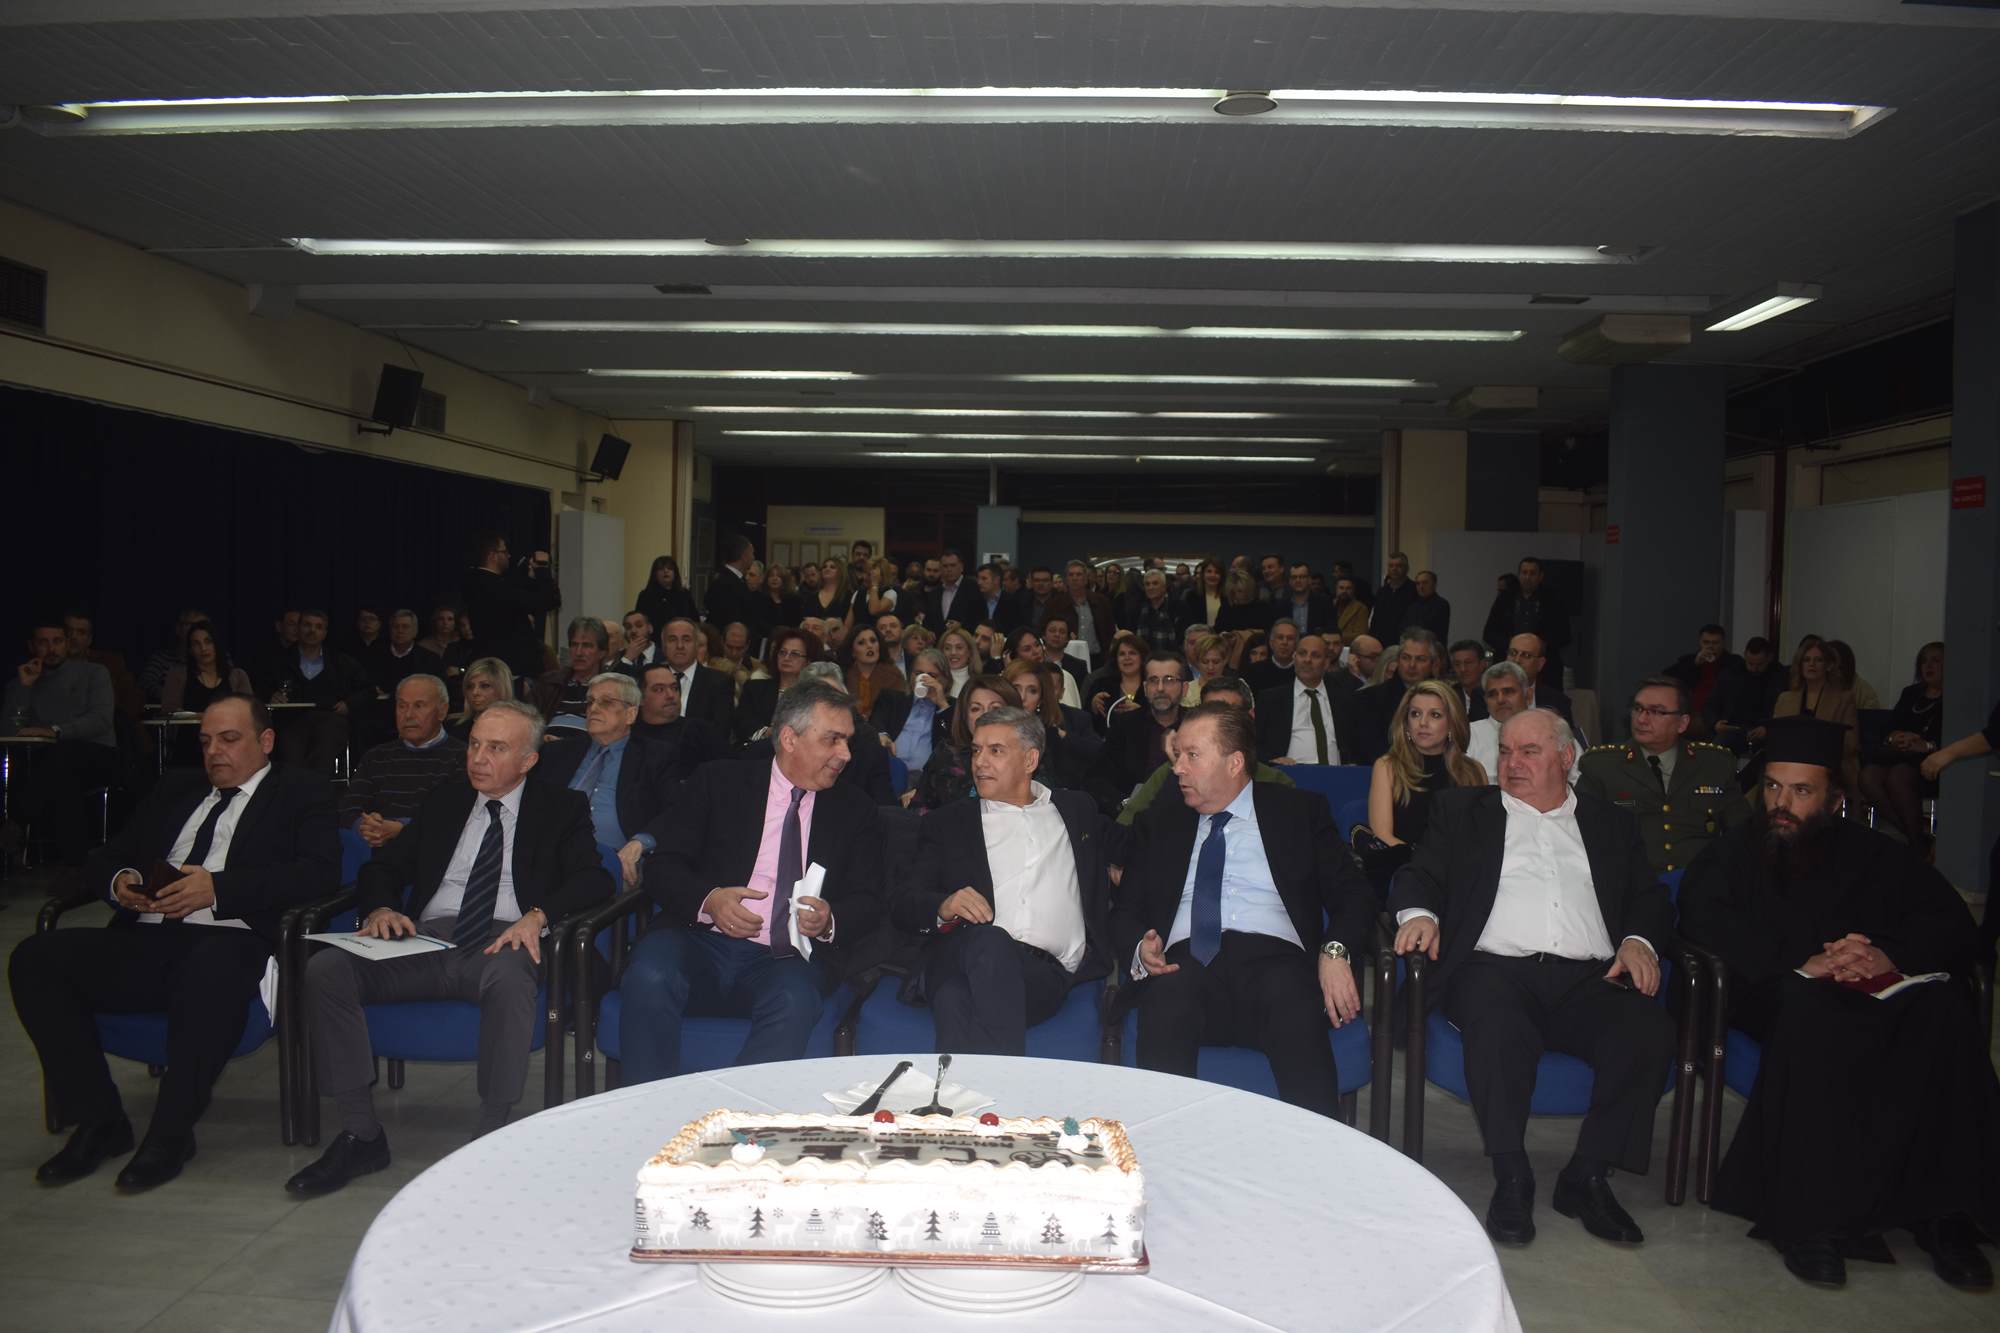 Έκοψε την πίτα του το ΤΕΕ στη Λάρισα - Παρουσιάστηκε λεύκωμα για τα 70 χρόνια ιστορίας του (φωτο)